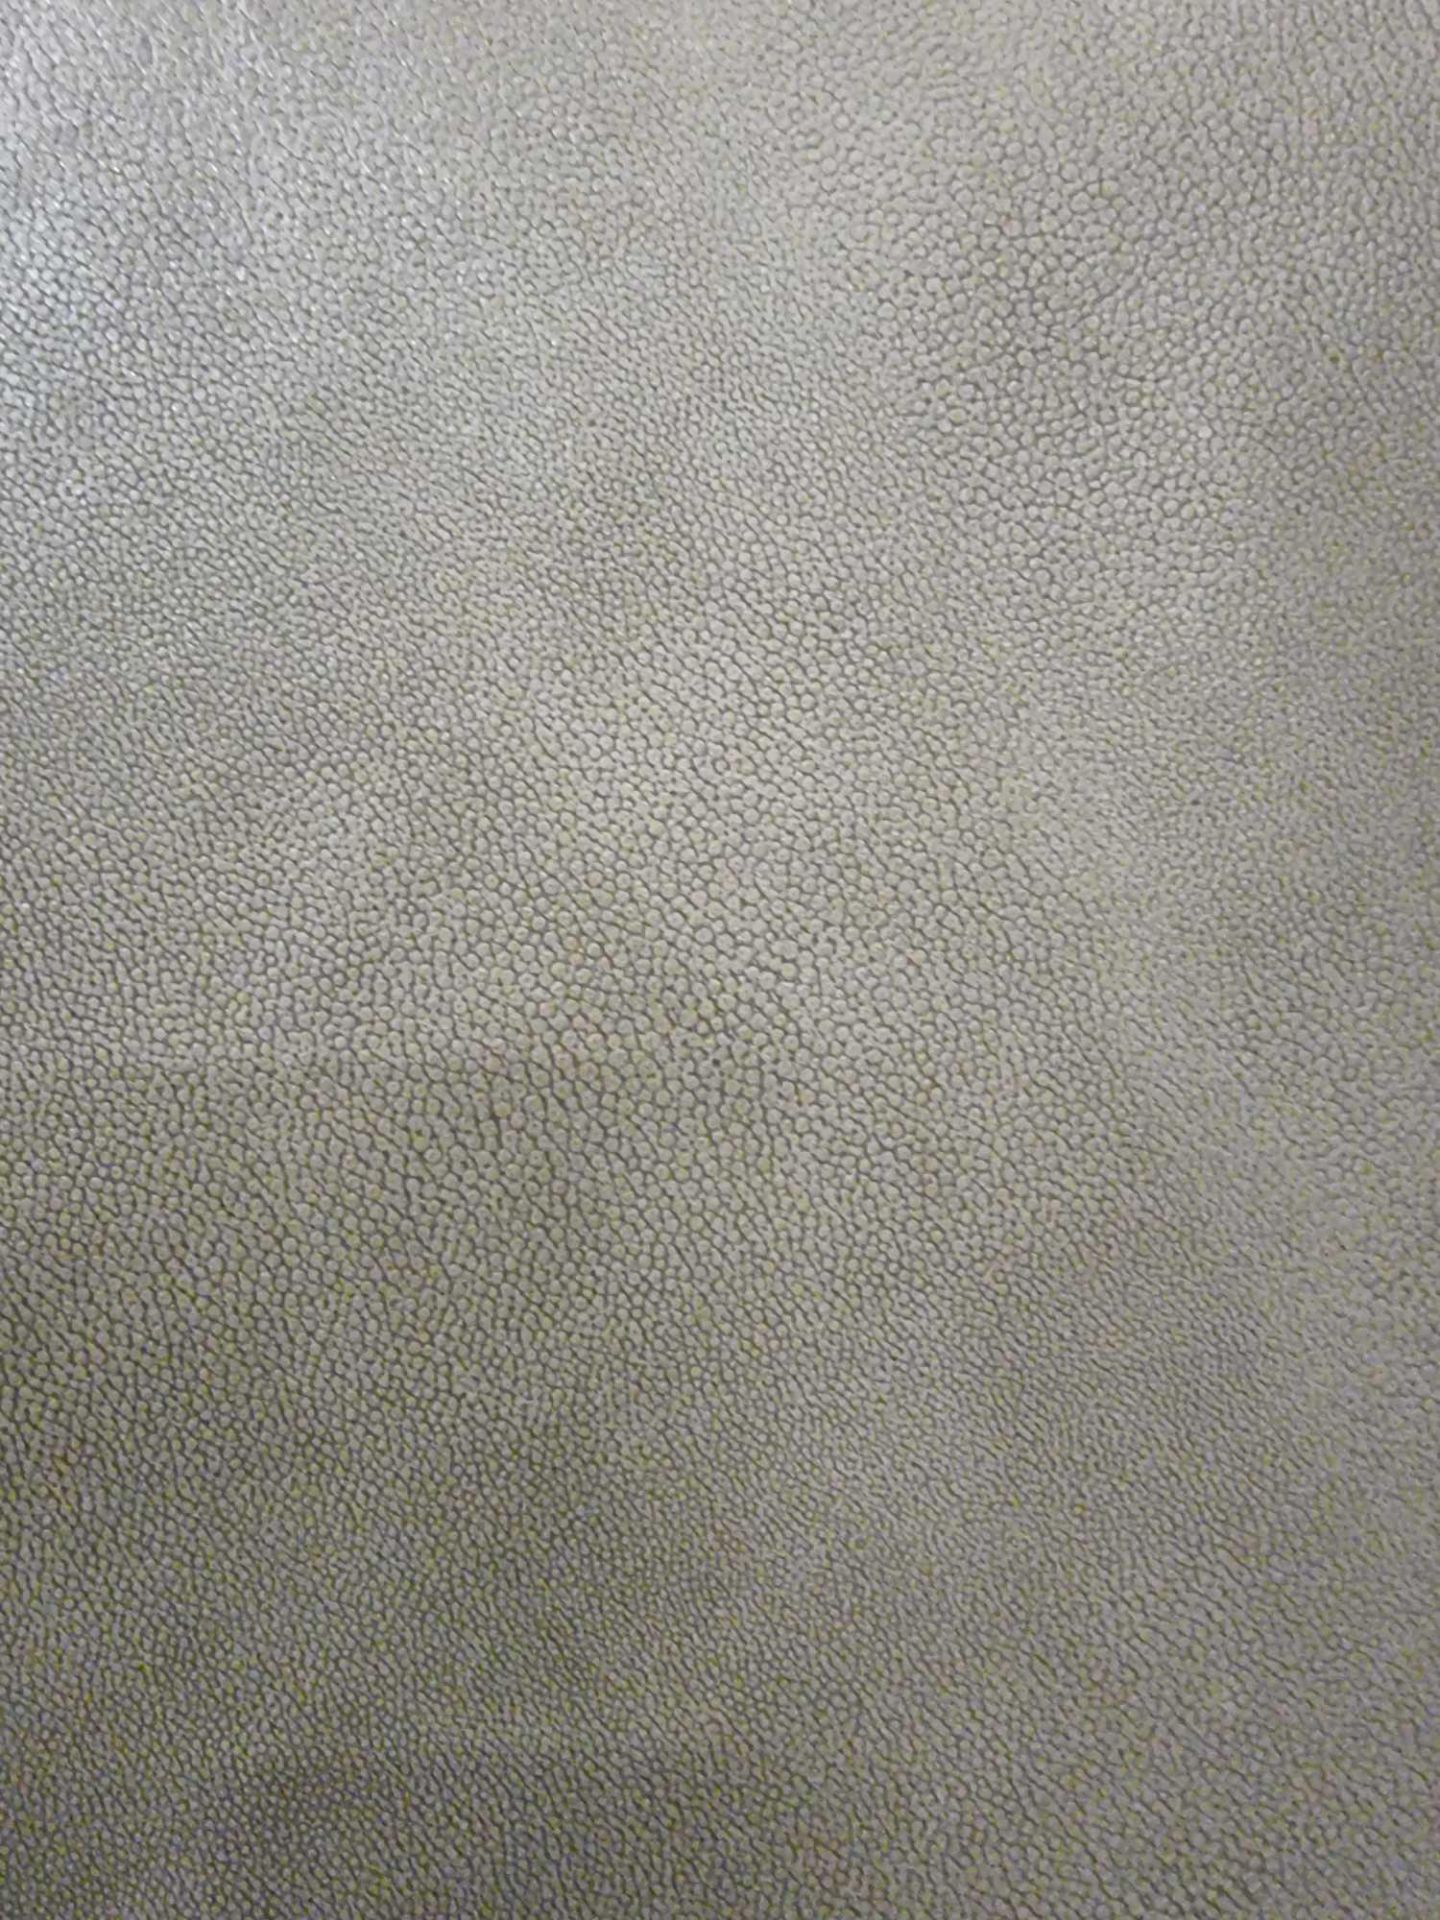 Sage Leather Hide approximately 3.42mÂ² 1.9 x 1.8cm ( Hide No,179) - Bild 2 aus 2